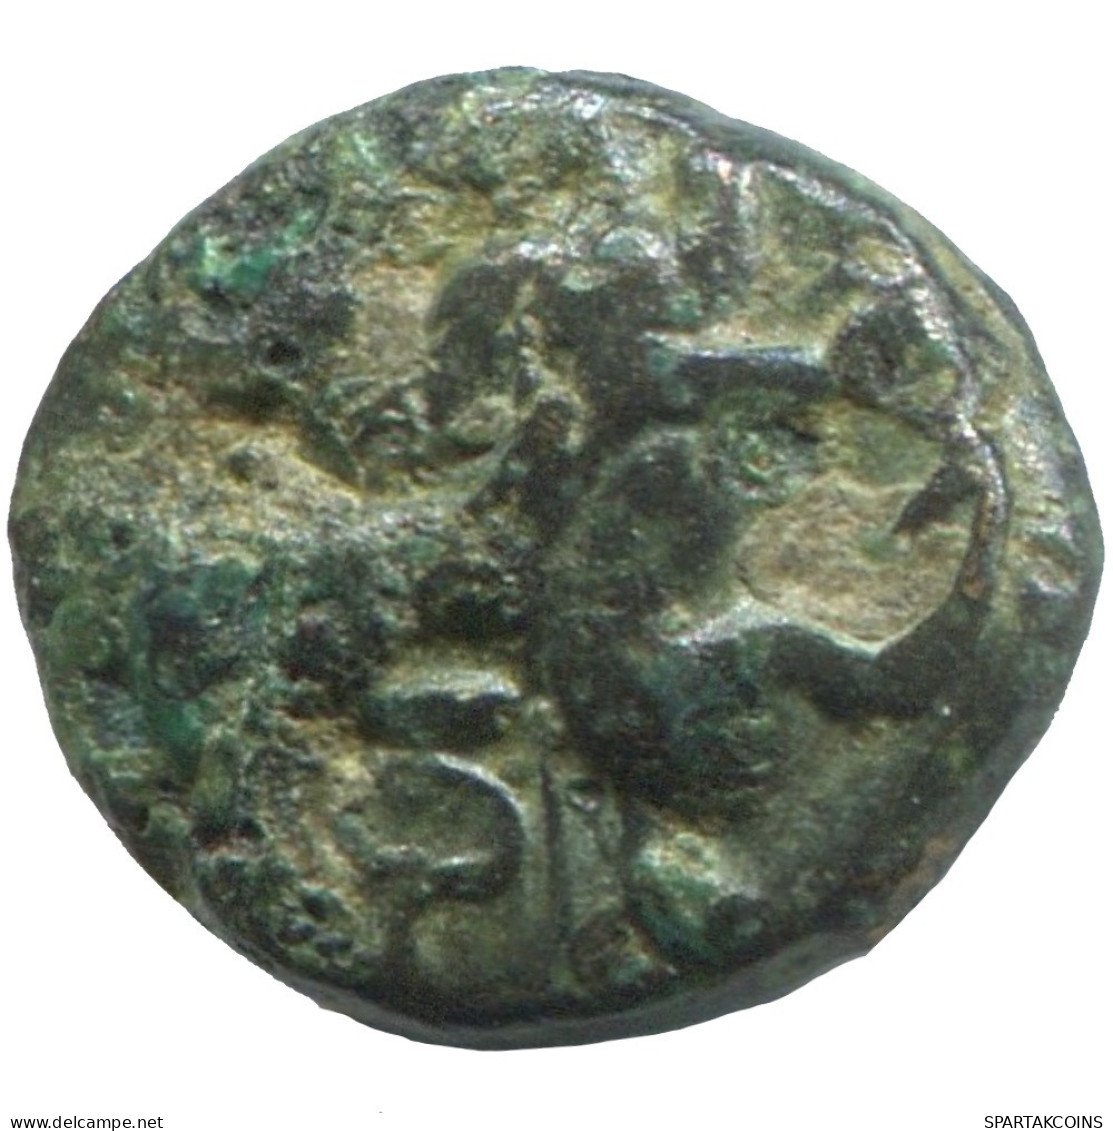 CLUB Antiguo GRIEGO ANTIGUO Moneda 0.9g/10mm #SAV1396.11.E.A - Griechische Münzen